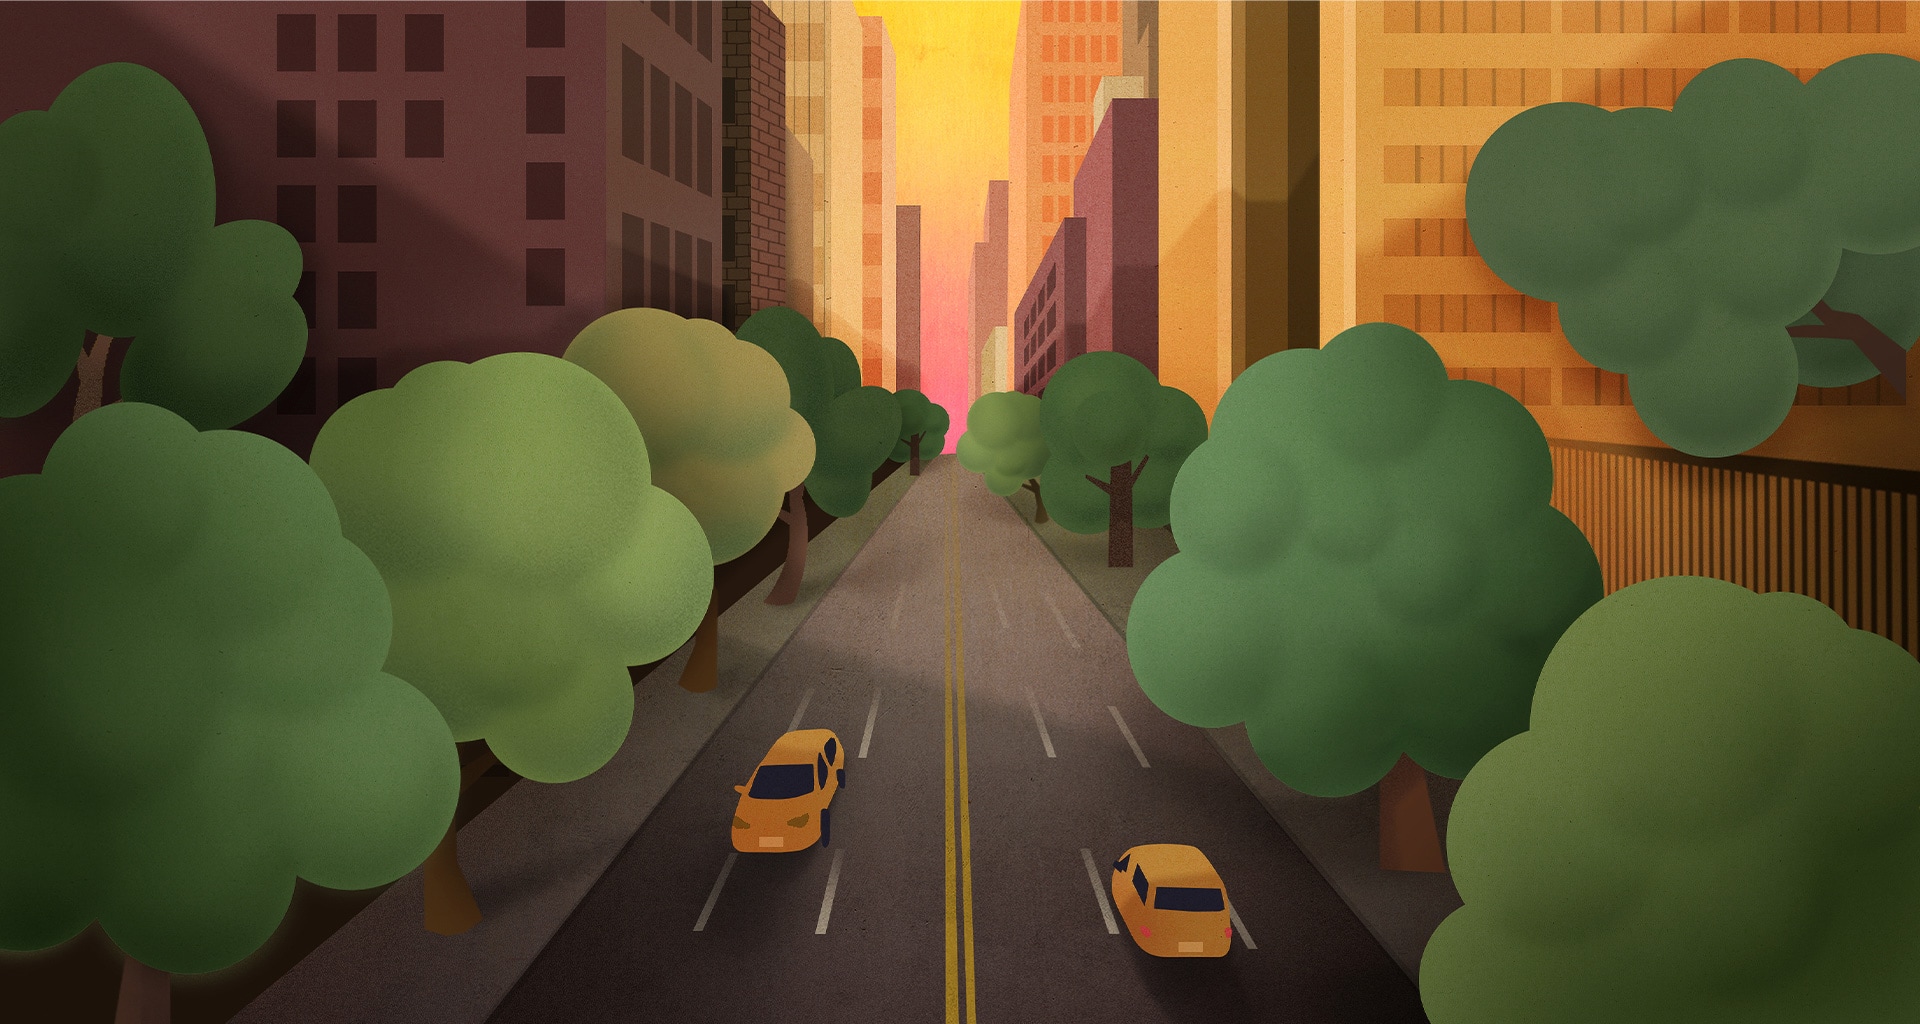 Une illustration au crayon de cire d’une route bordée d’arbres avec des voitures